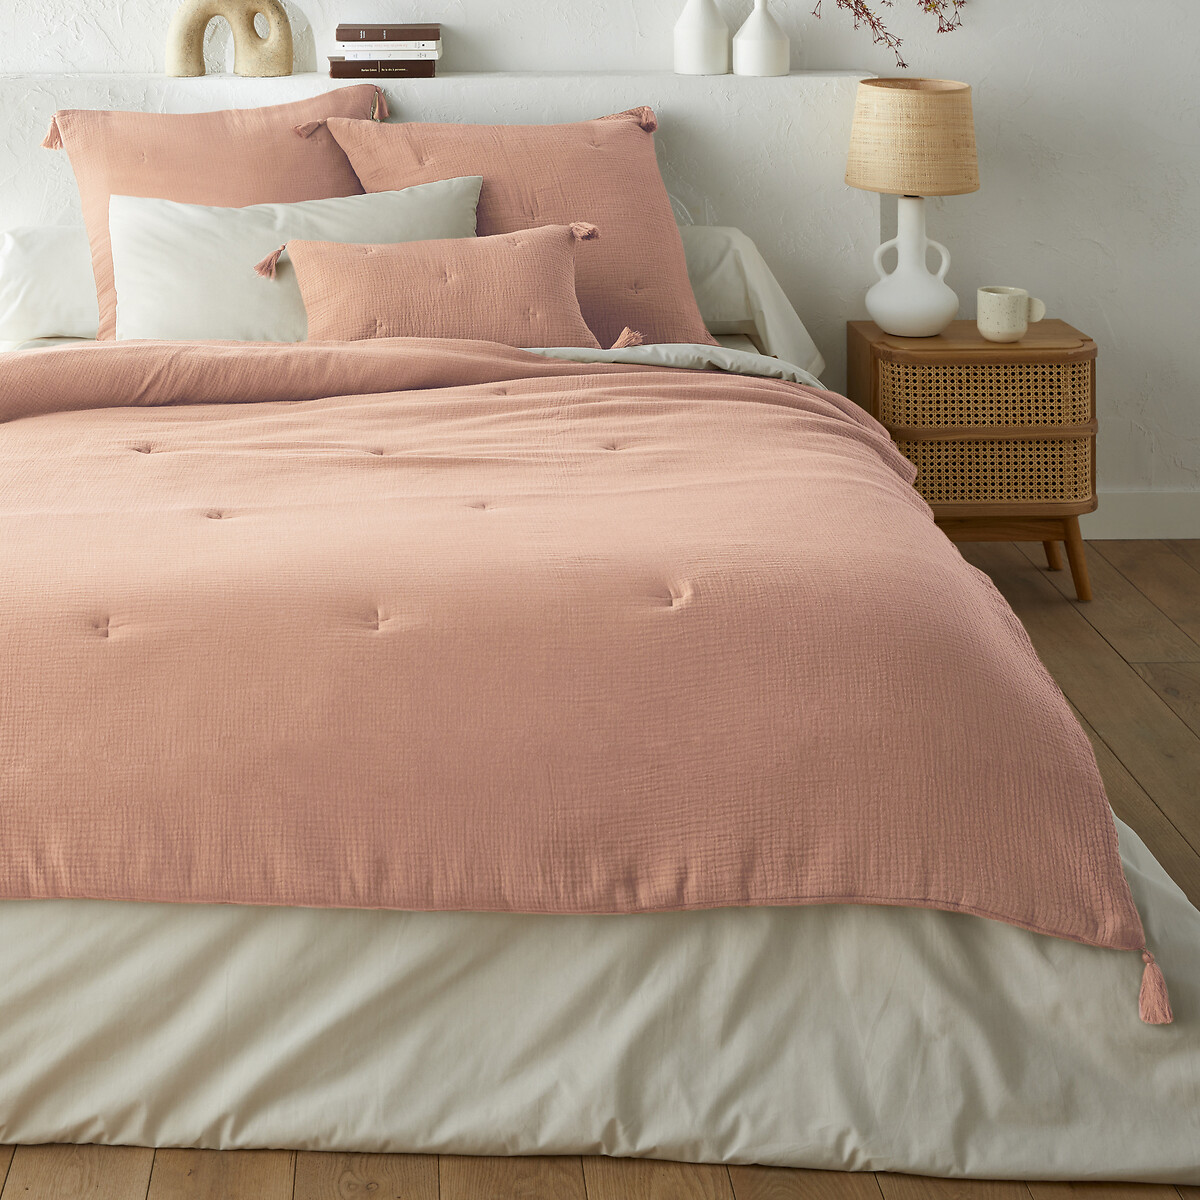 Одеяло из хлопчатобумажной газовой ткани Kumla 90 x 190 см розовый сумка для пеленания из хлопчатобумажной газовой ткани с принтом callas единый размер розовый